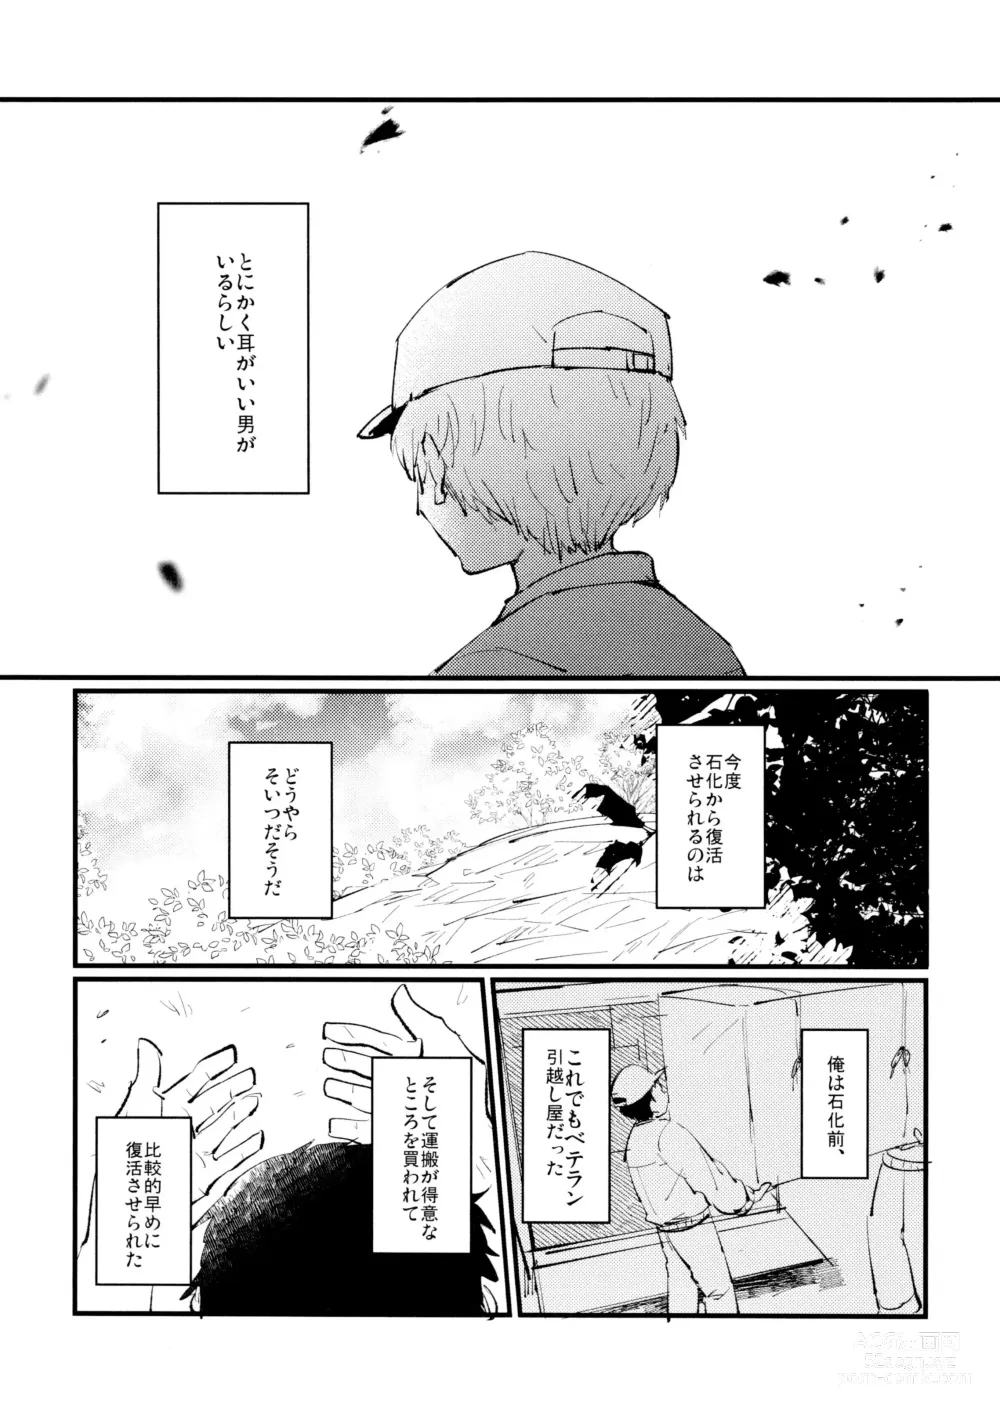 Page 4 of doujinshi Yasashii Kawaii Ore no Tenshi Ukyo-san